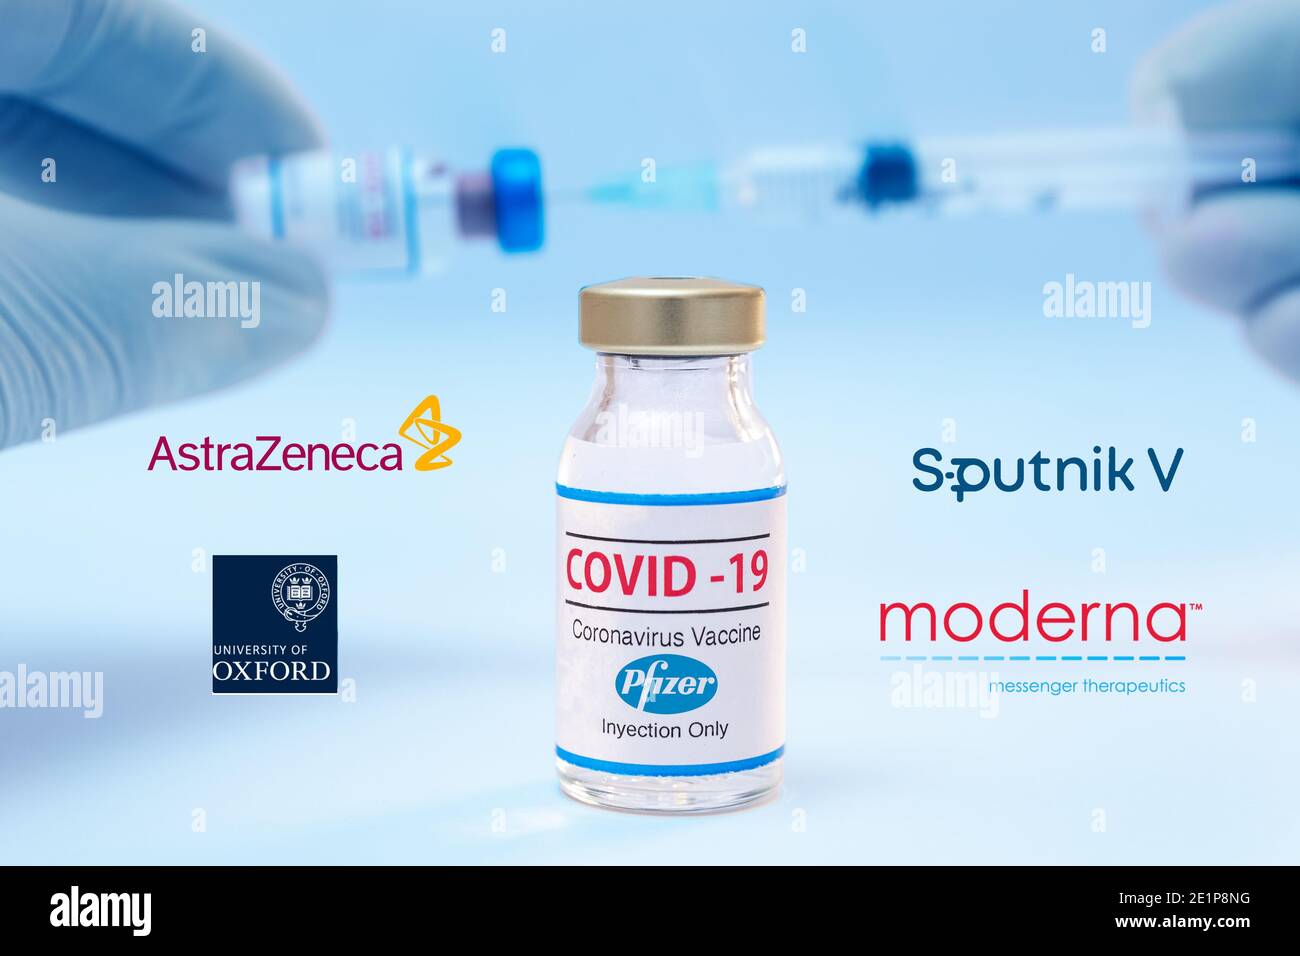 Bouteille de vaccin contre le coronavirus Pfizer avec les logos Spoutnik V, Moderna, Astra Zeneca et Oxford University comme arrière-plan. Banque D'Images